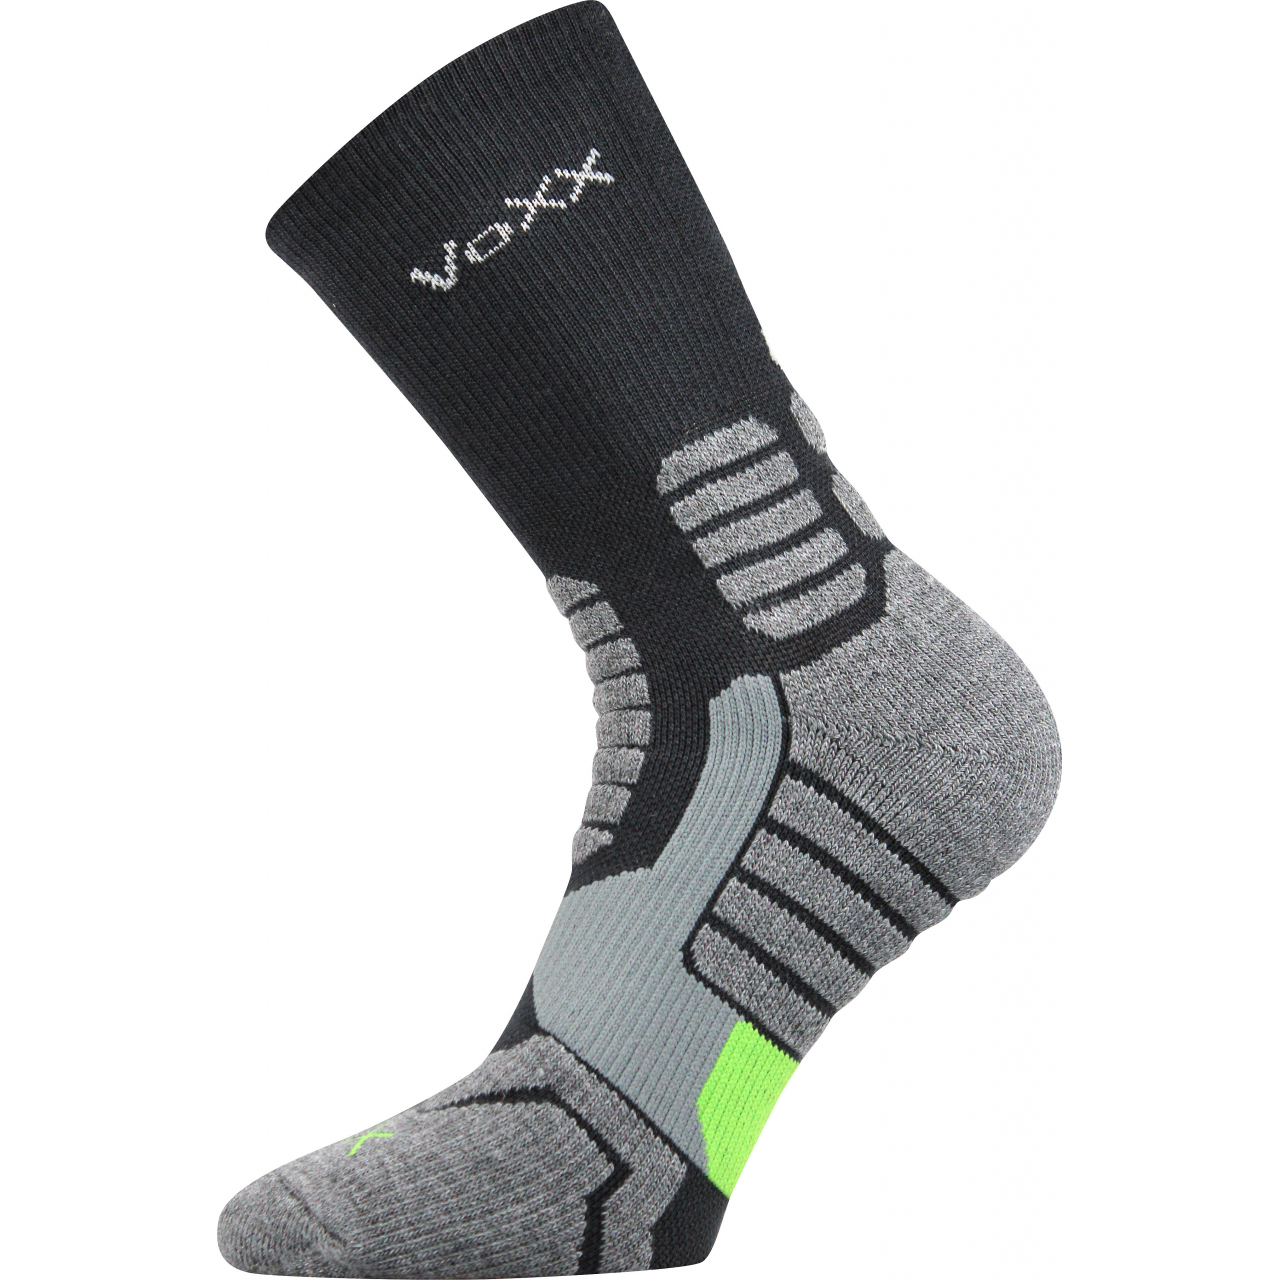 Ponožky kompresní unisex Voxx Ronin - tmavě šedé-černé, 35-38